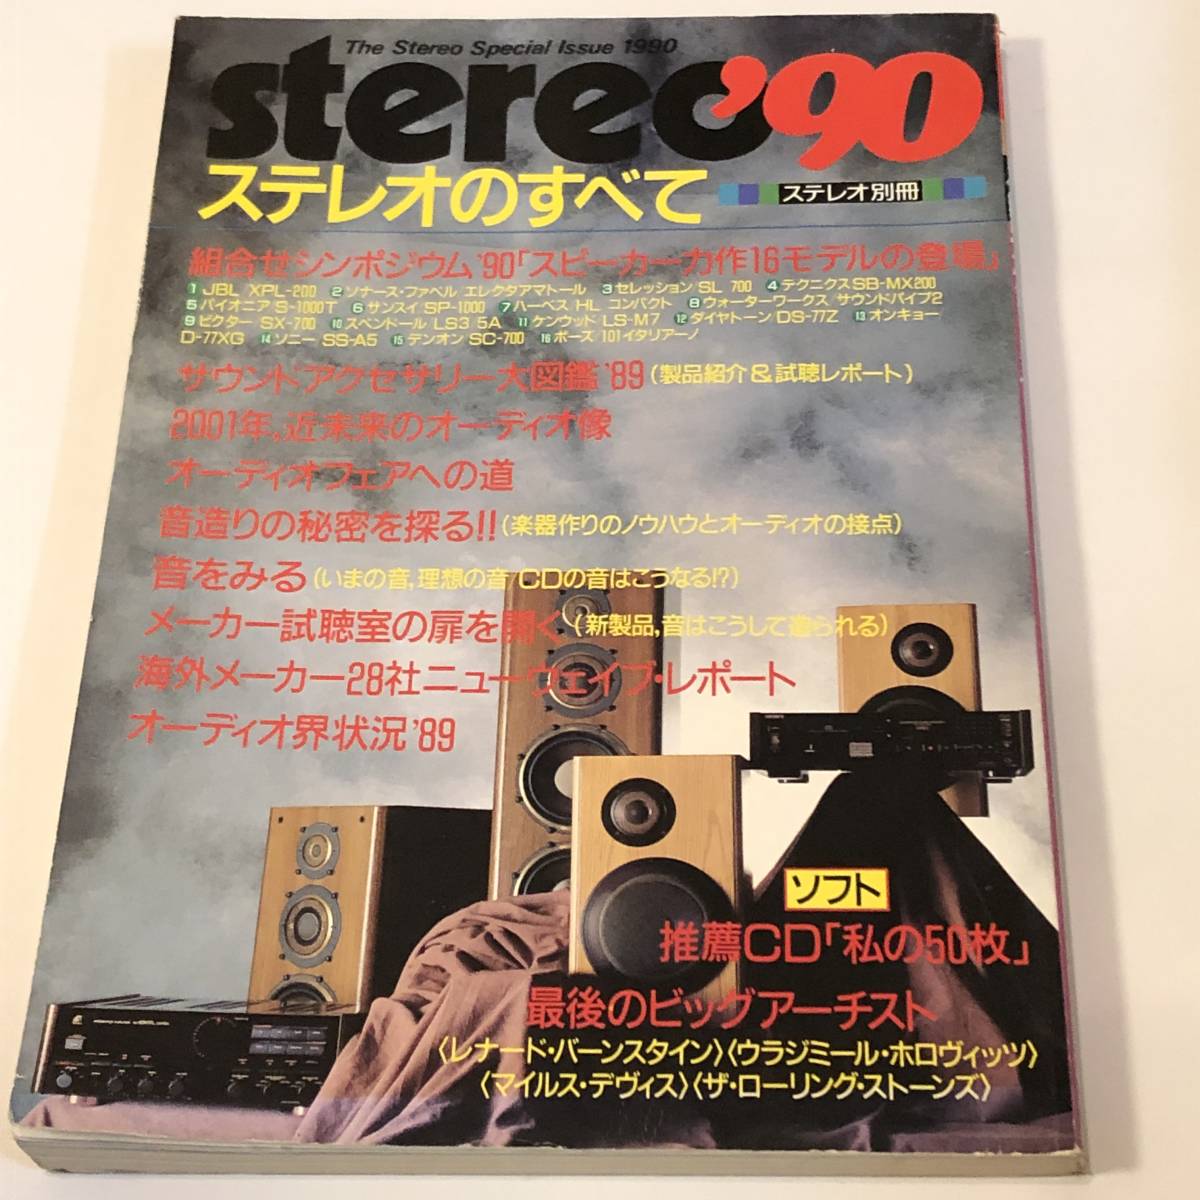  быстрое решение stereo'90 стерео отдельный выпуск стерео. все динамик сила произведение 16 модель появление JBL/XPL другой / звук аксессуары большой иллюстрированная книга 